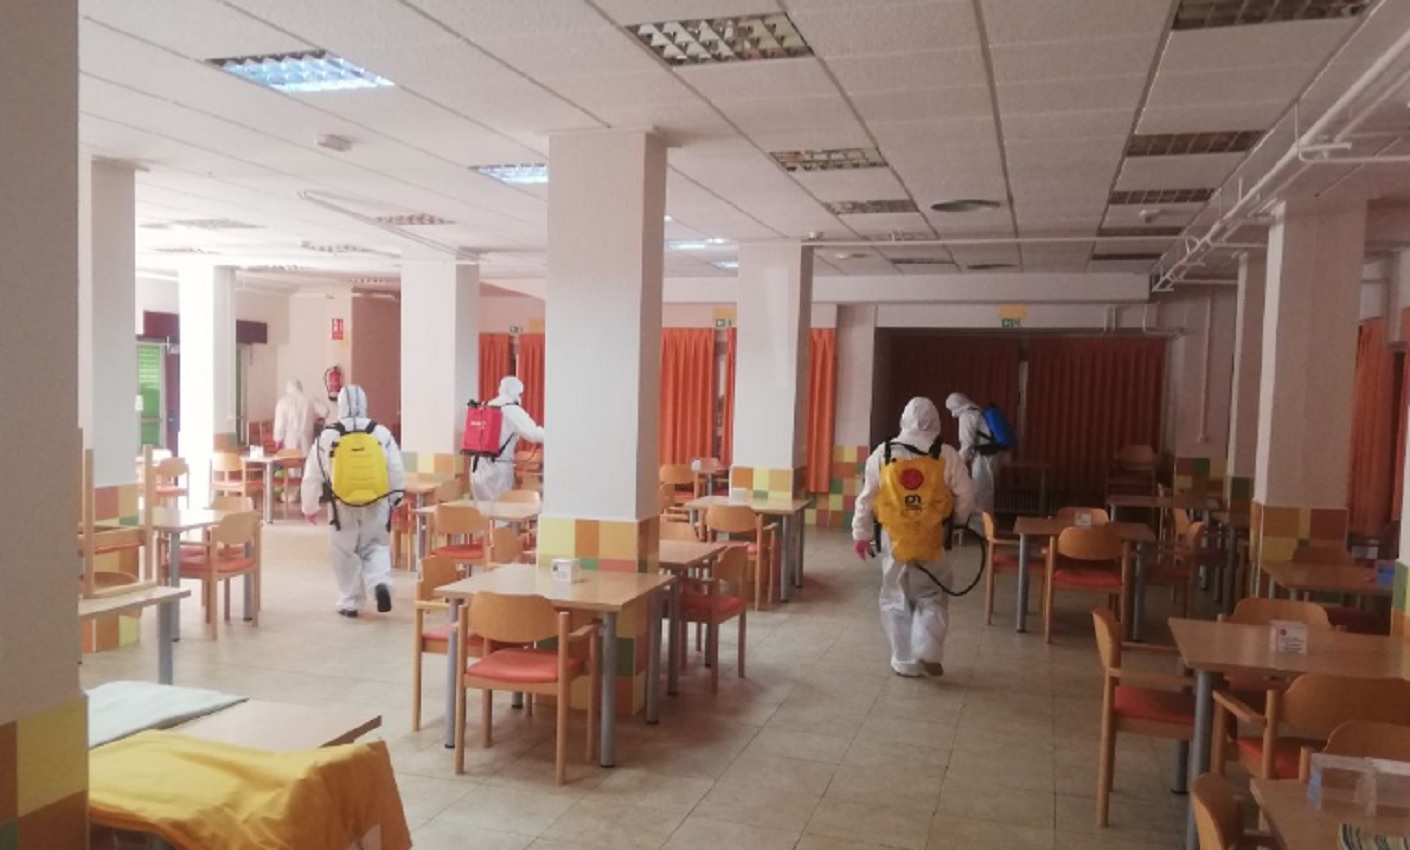 Efectivos de Geacam desinfectan la residencia Núñez de Balboa de Albacete, una de las más afectadas por el coronavirus Covid-19. Foto: CCOO Geacam.